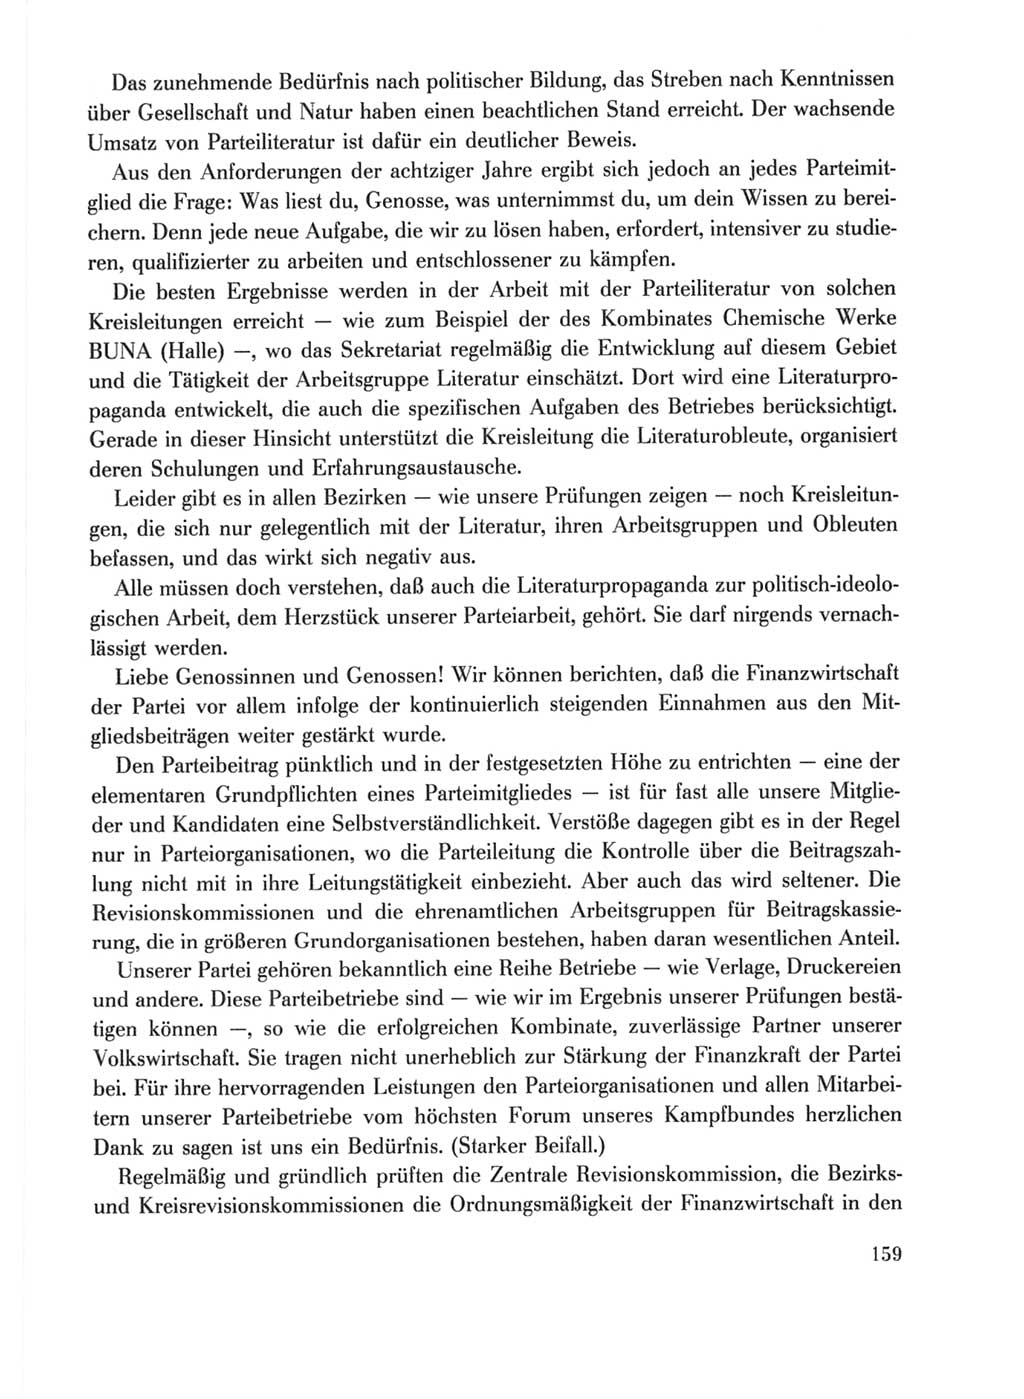 Protokoll der Verhandlungen des Ⅹ. Parteitages der Sozialistischen Einheitspartei Deutschlands (SED) [Deutsche Demokratische Republik (DDR)] 1981, Band 1, Seite 159 (Prot. Verh. Ⅹ. PT SED DDR 1981, Bd. 1, S. 159)